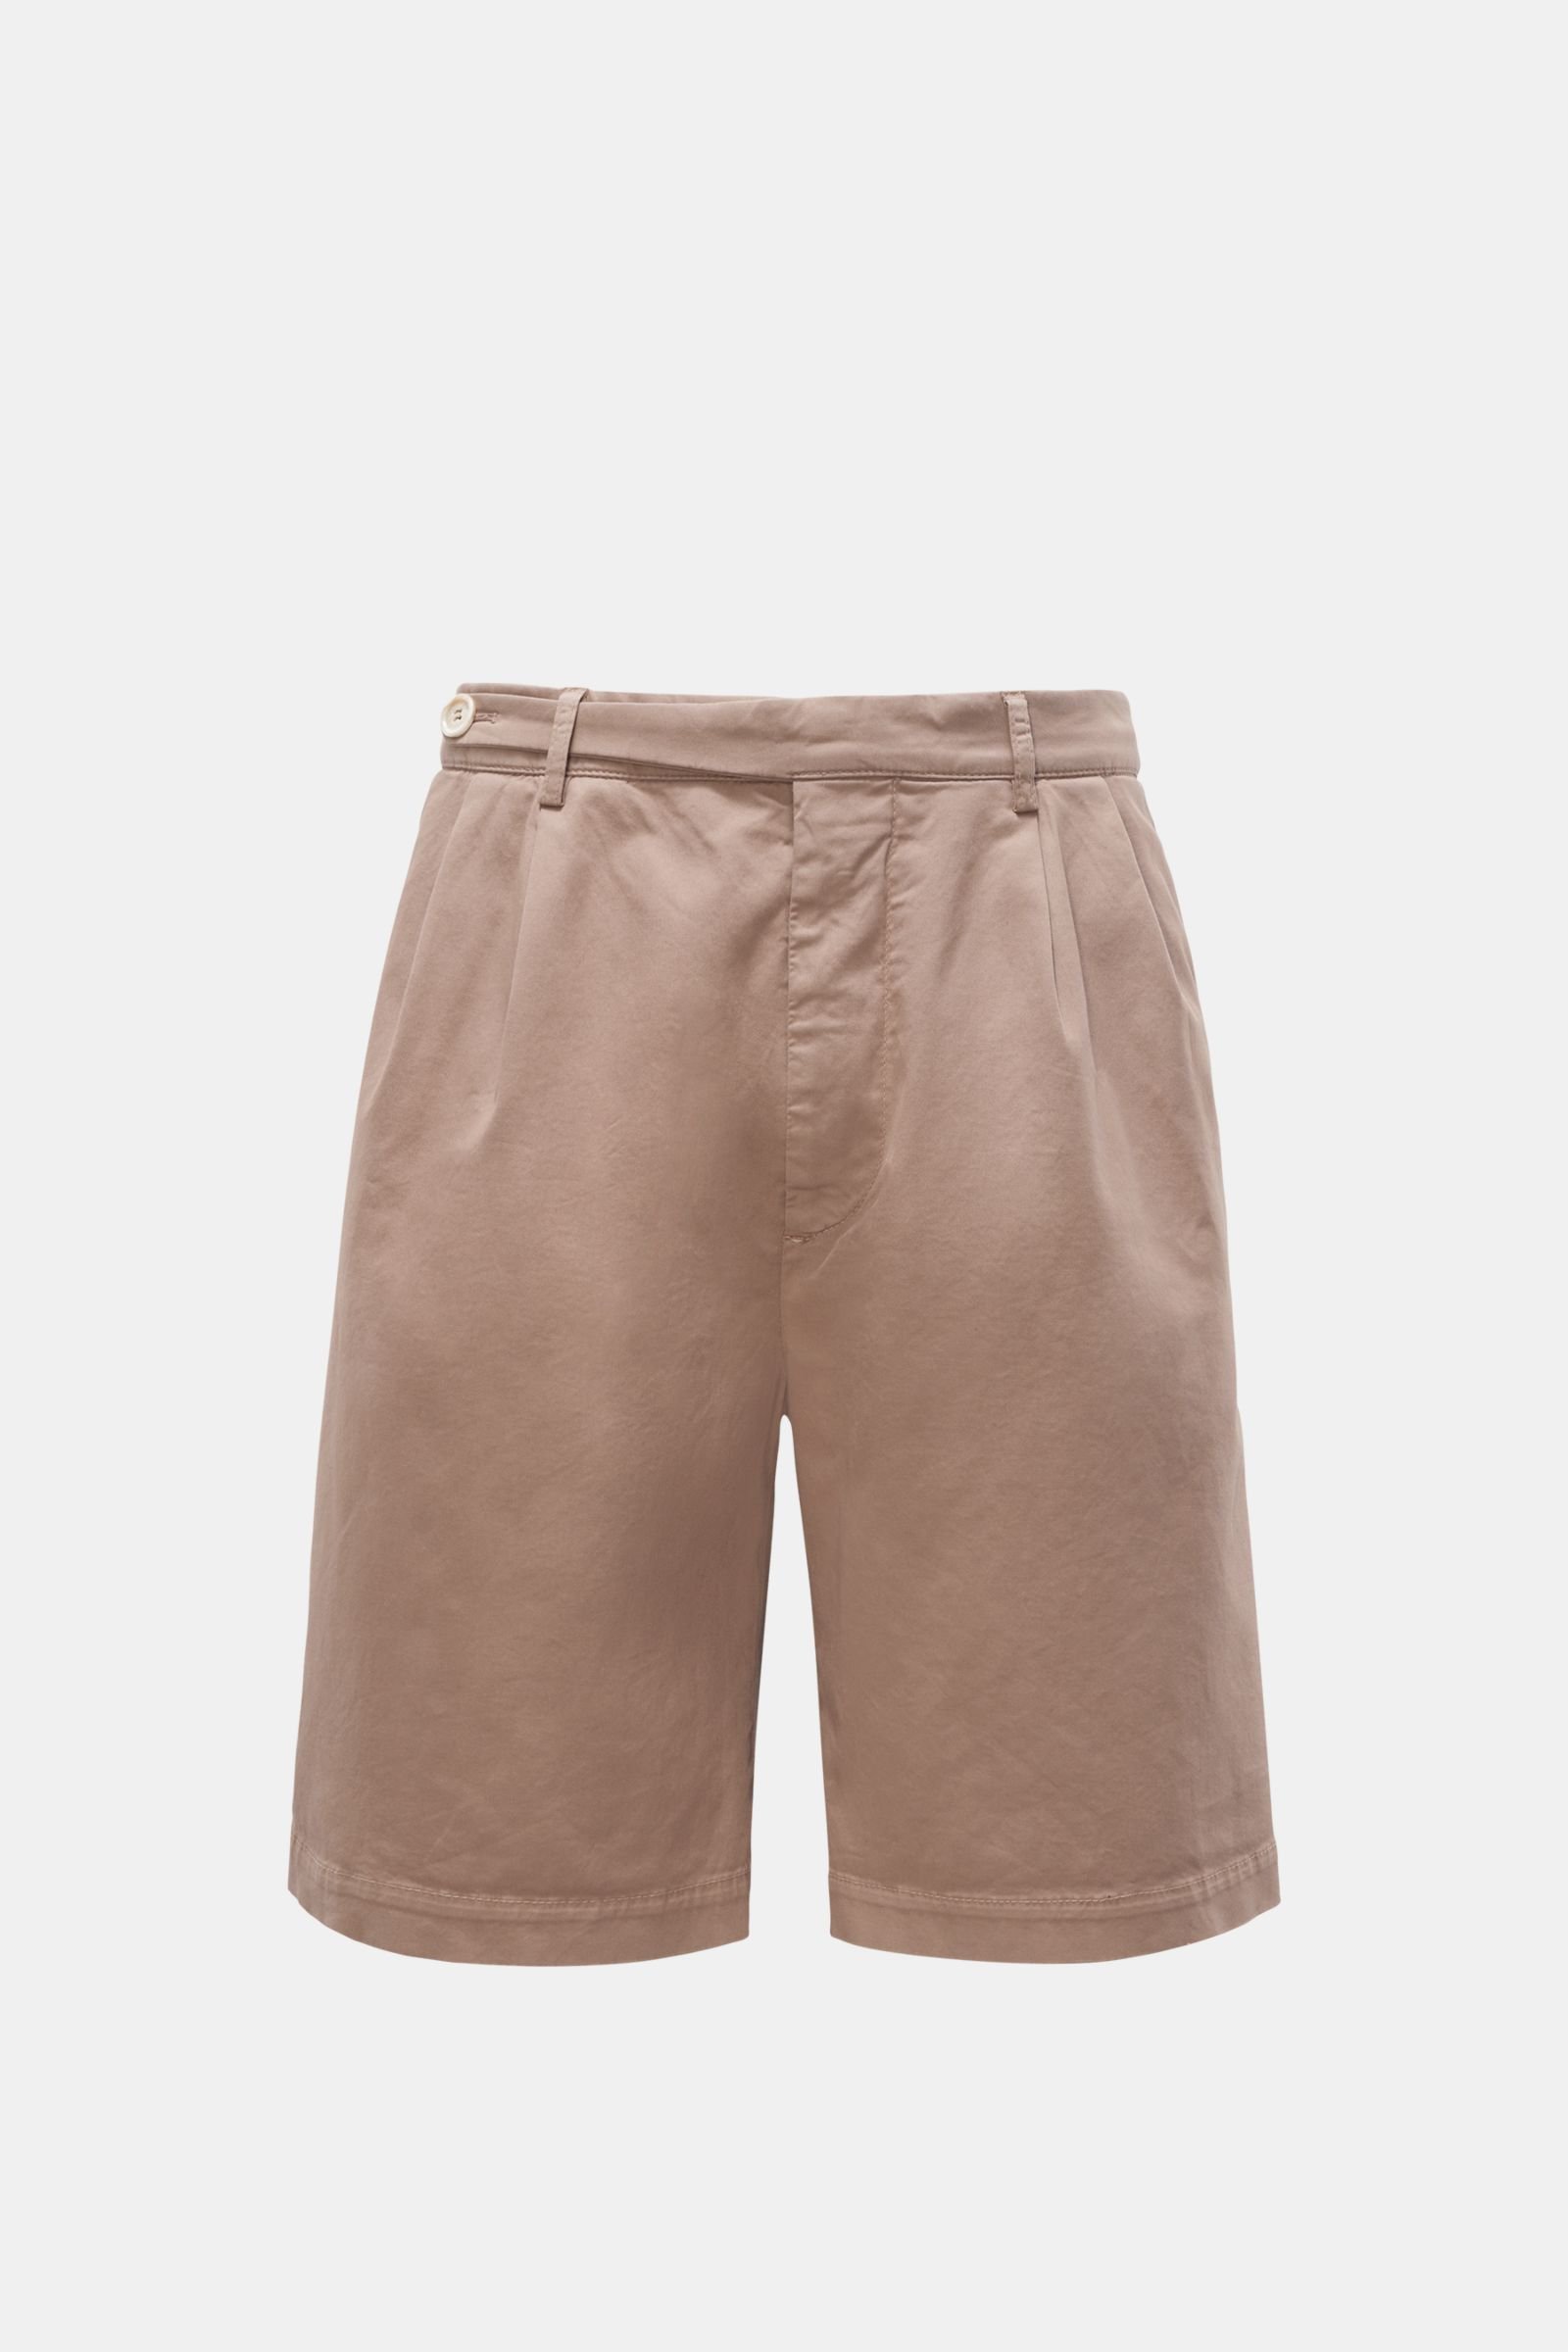 Shorts grey-brown